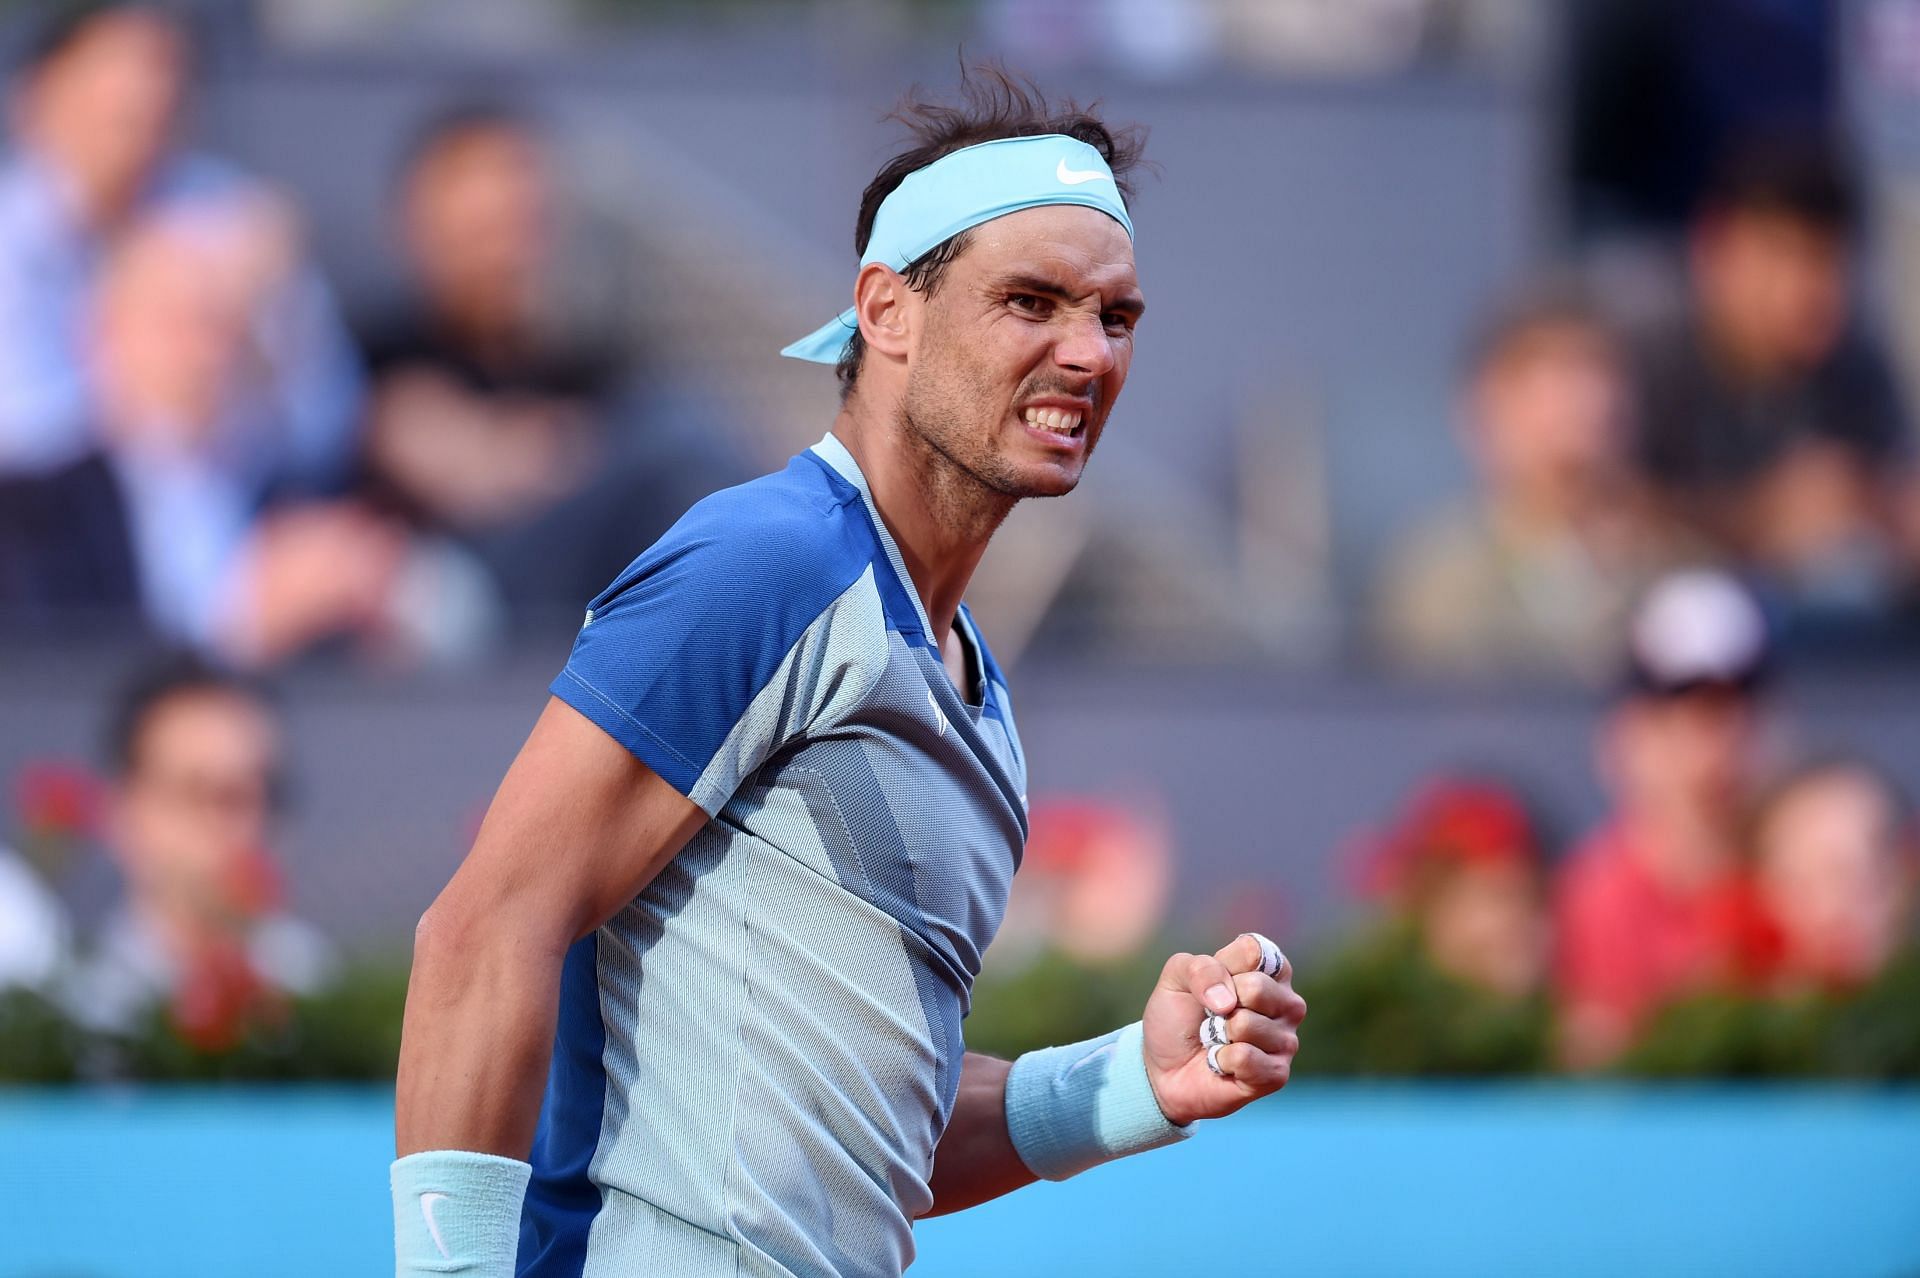 Rafael Nadal next takes on Carlos Alcaraz at the 2022 Madrid Masters